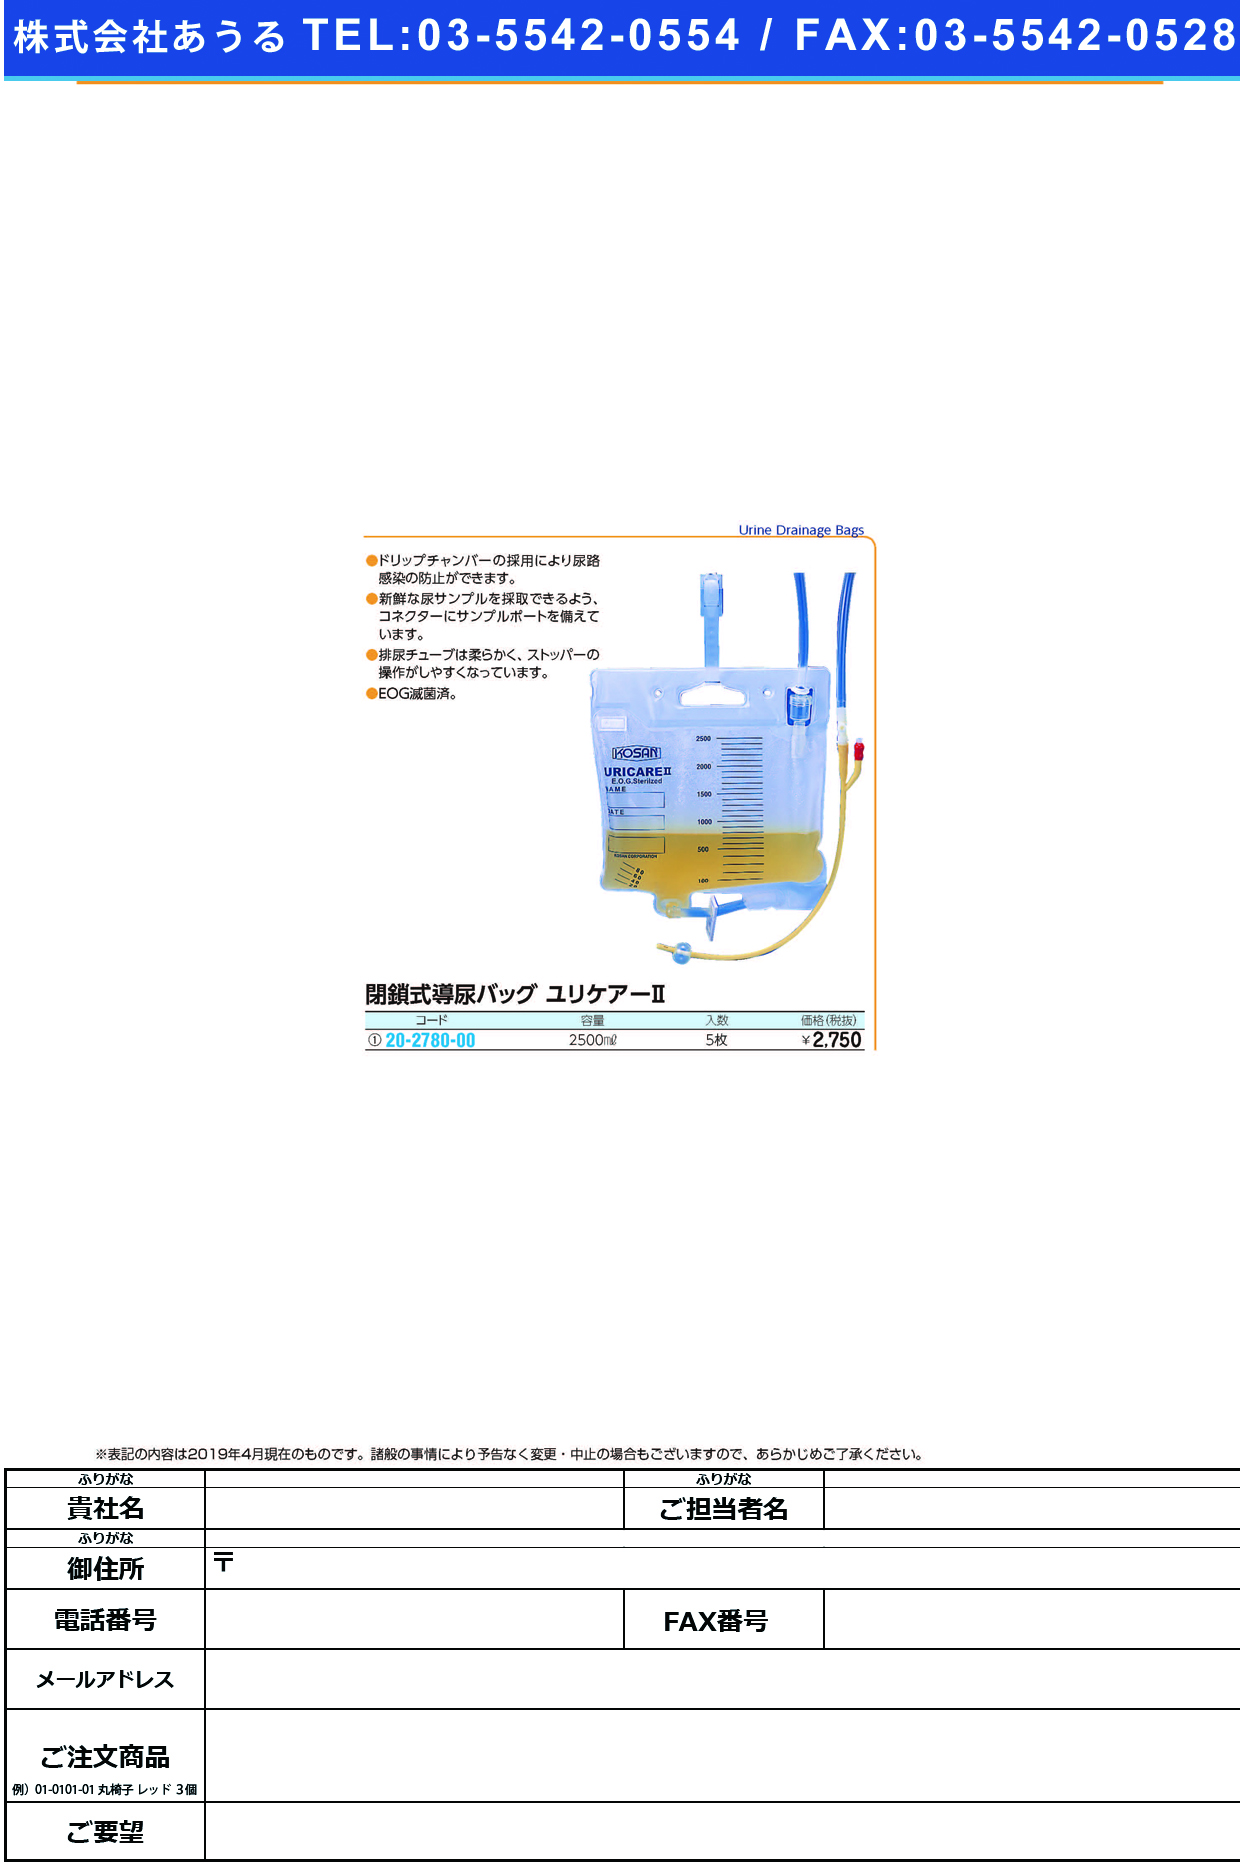 (20-2780-00)閉鎖式導尿バッグユリケアⅡ 2500ML(5ﾏｲｲﾘ) ﾍｲｻｼｷﾆｮｳﾄﾞｳﾊﾞｯｸﾞﾕﾘｹｱ【1箱単位】【2019年カタログ商品】